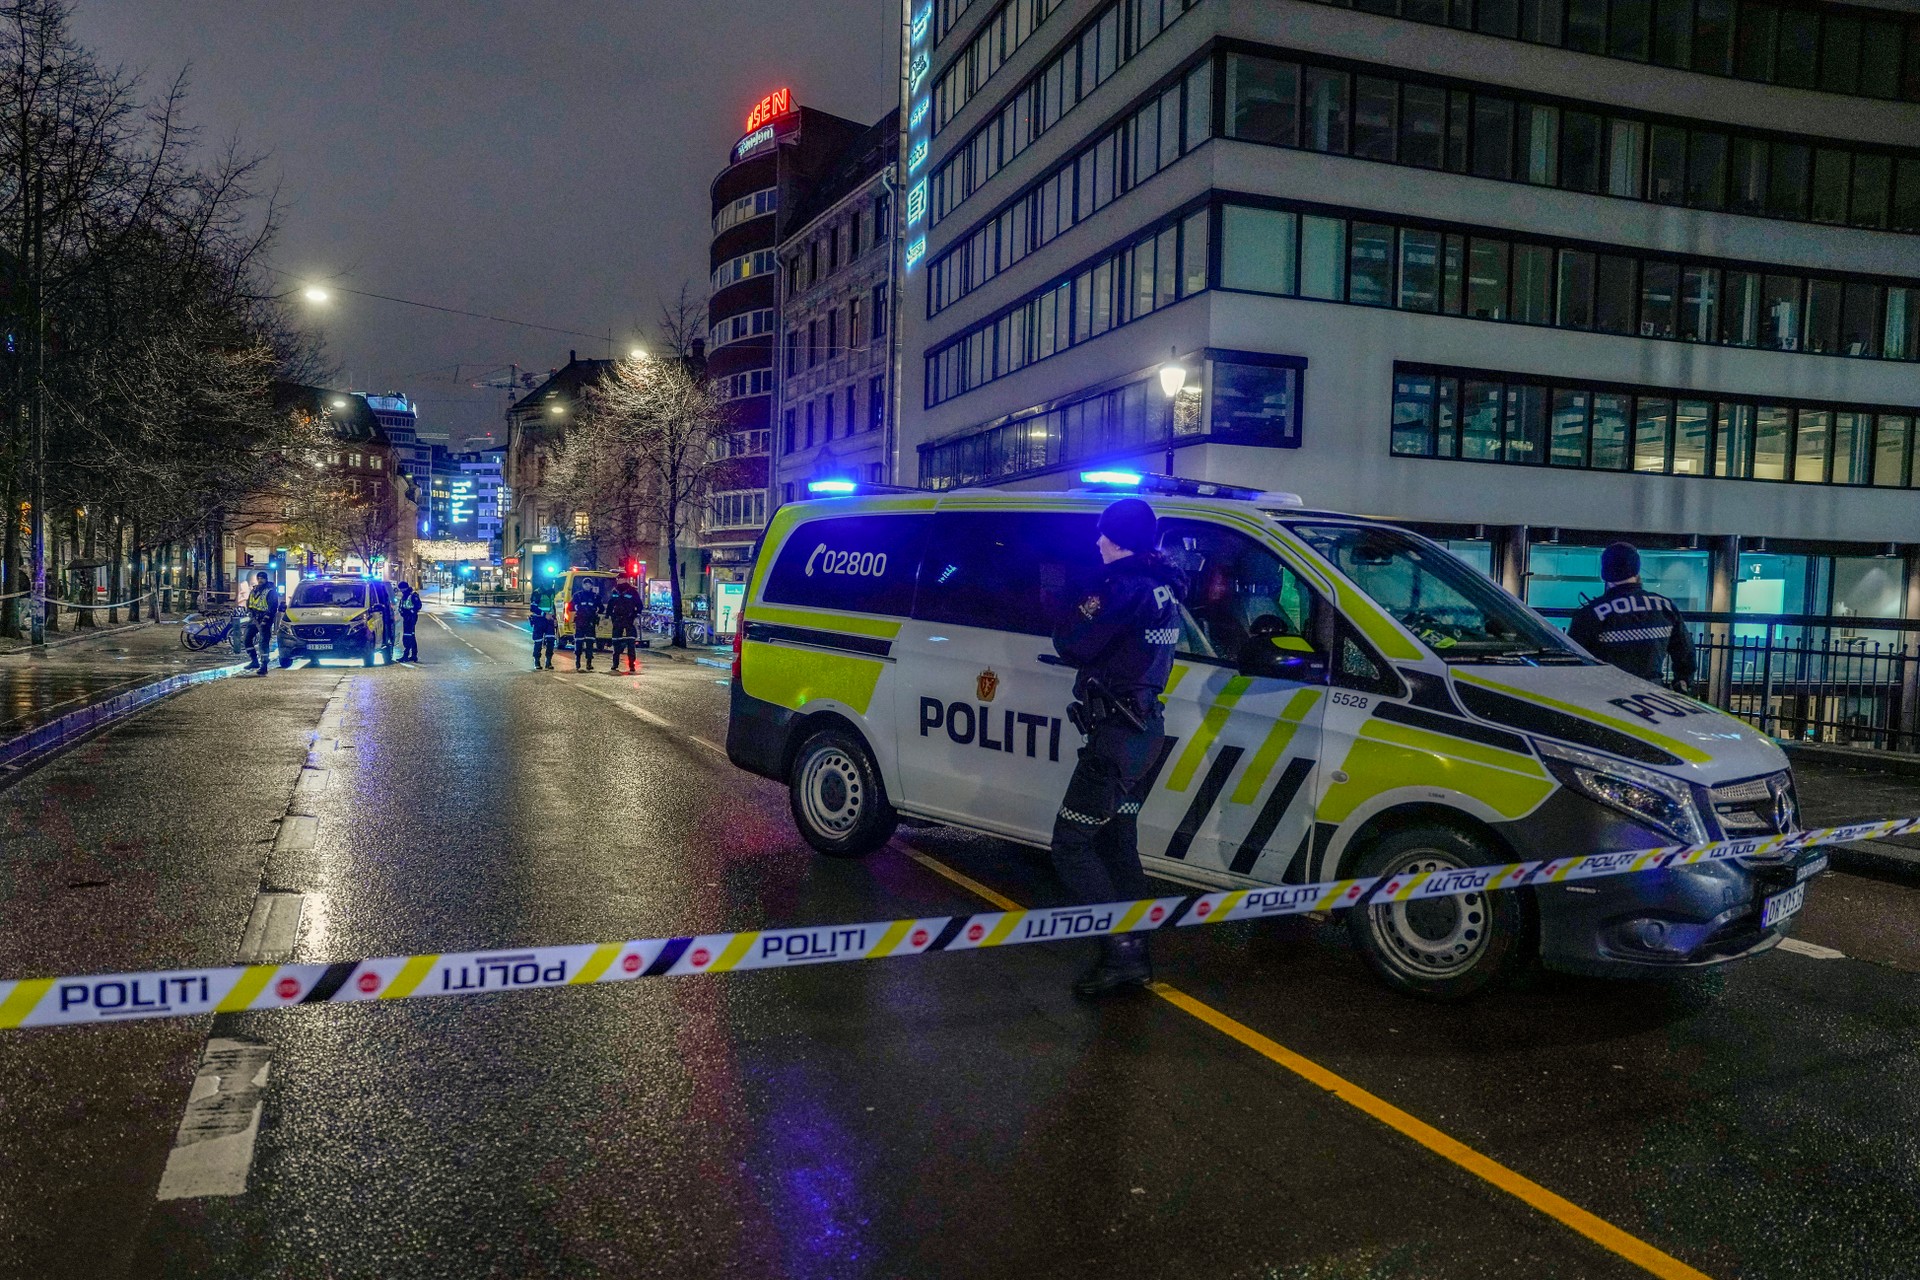 Un homme d’une vingtaine d’années abattu au Groenland à Oslo – NRK Norway – Tour d’horizon des actualités des différentes régions du pays